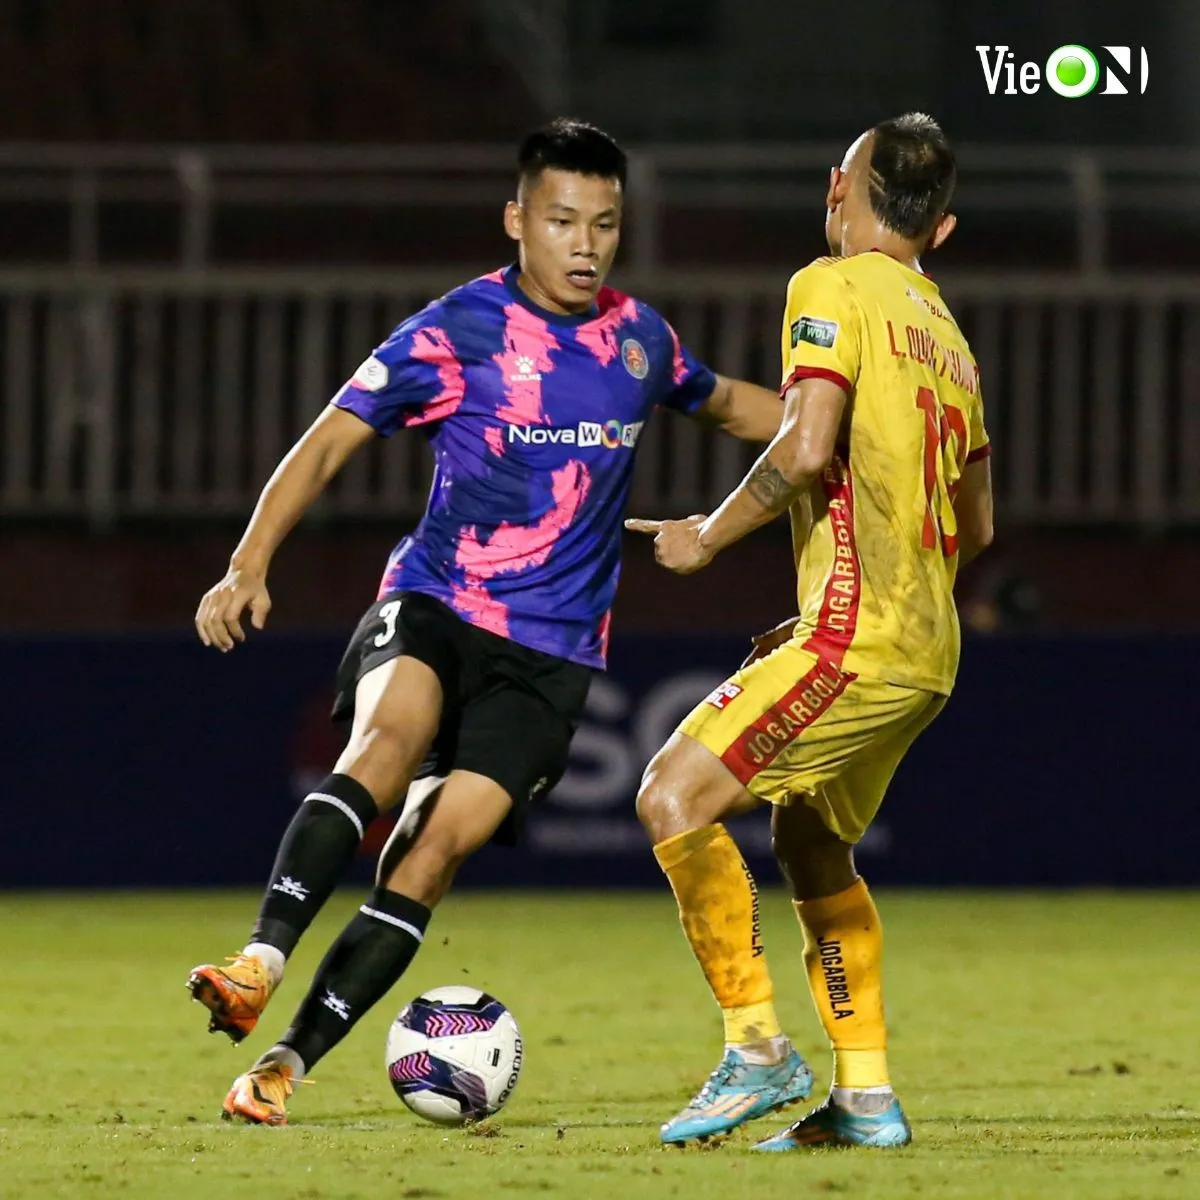 Vòng 19 V.League 2022 trên VieON: Hà Nội FC bứt tốc, HAGL mong cắt đứt chuỗi trận thất vọng 202000